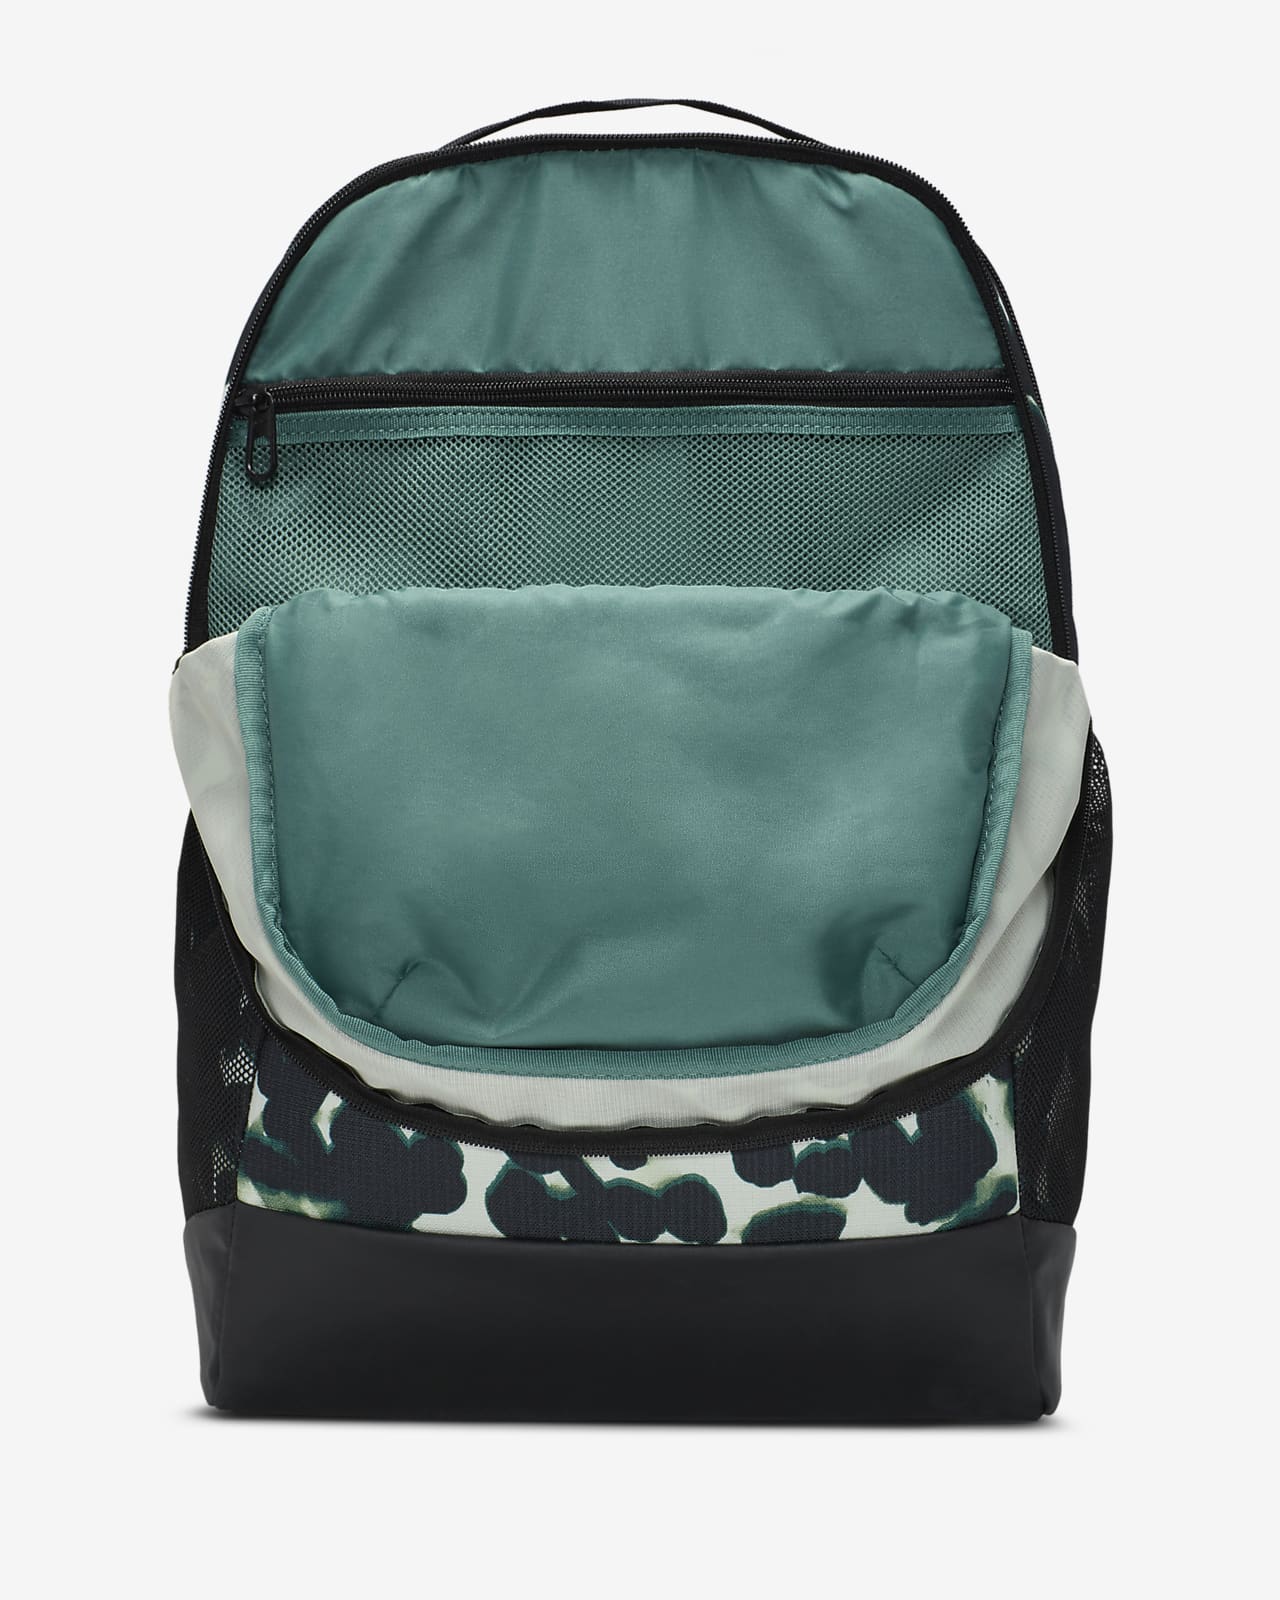 Nike Brasilia Medium Cargo Khaki (Olive) Backpack ( BA6124-325